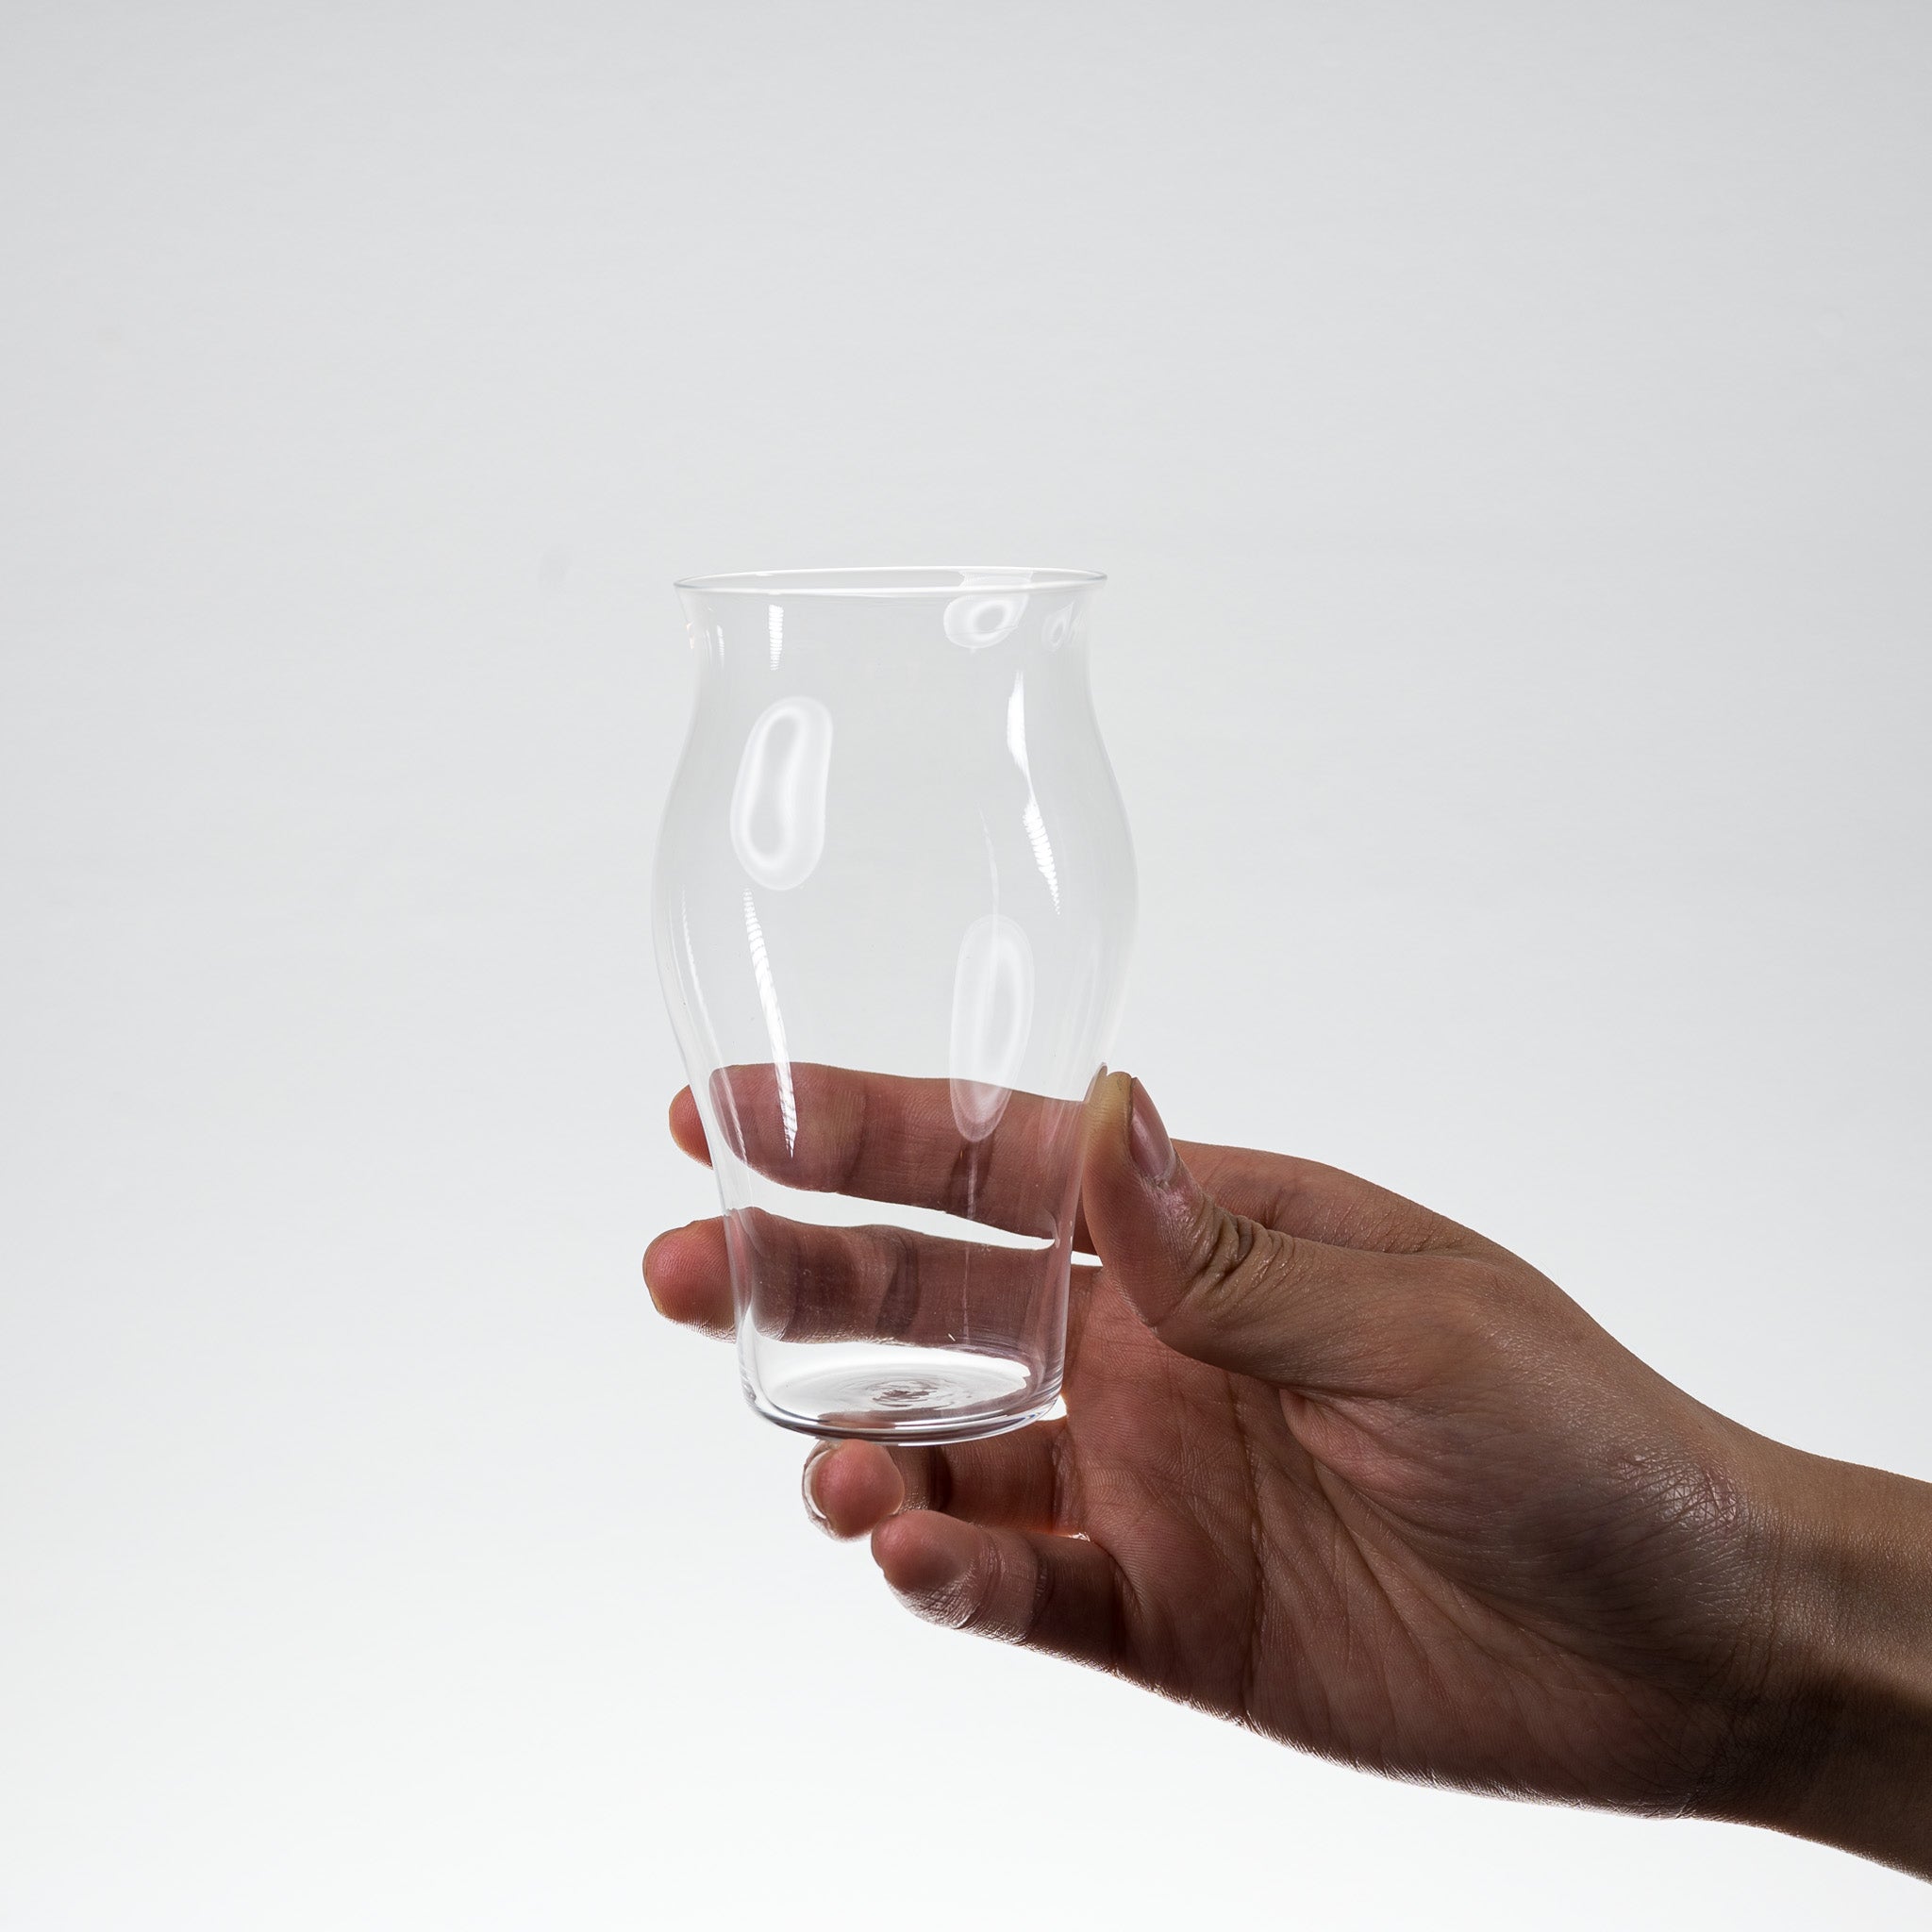 Hirota Glass - Pair Sake Cups / 廣田硝子 ペアグラス